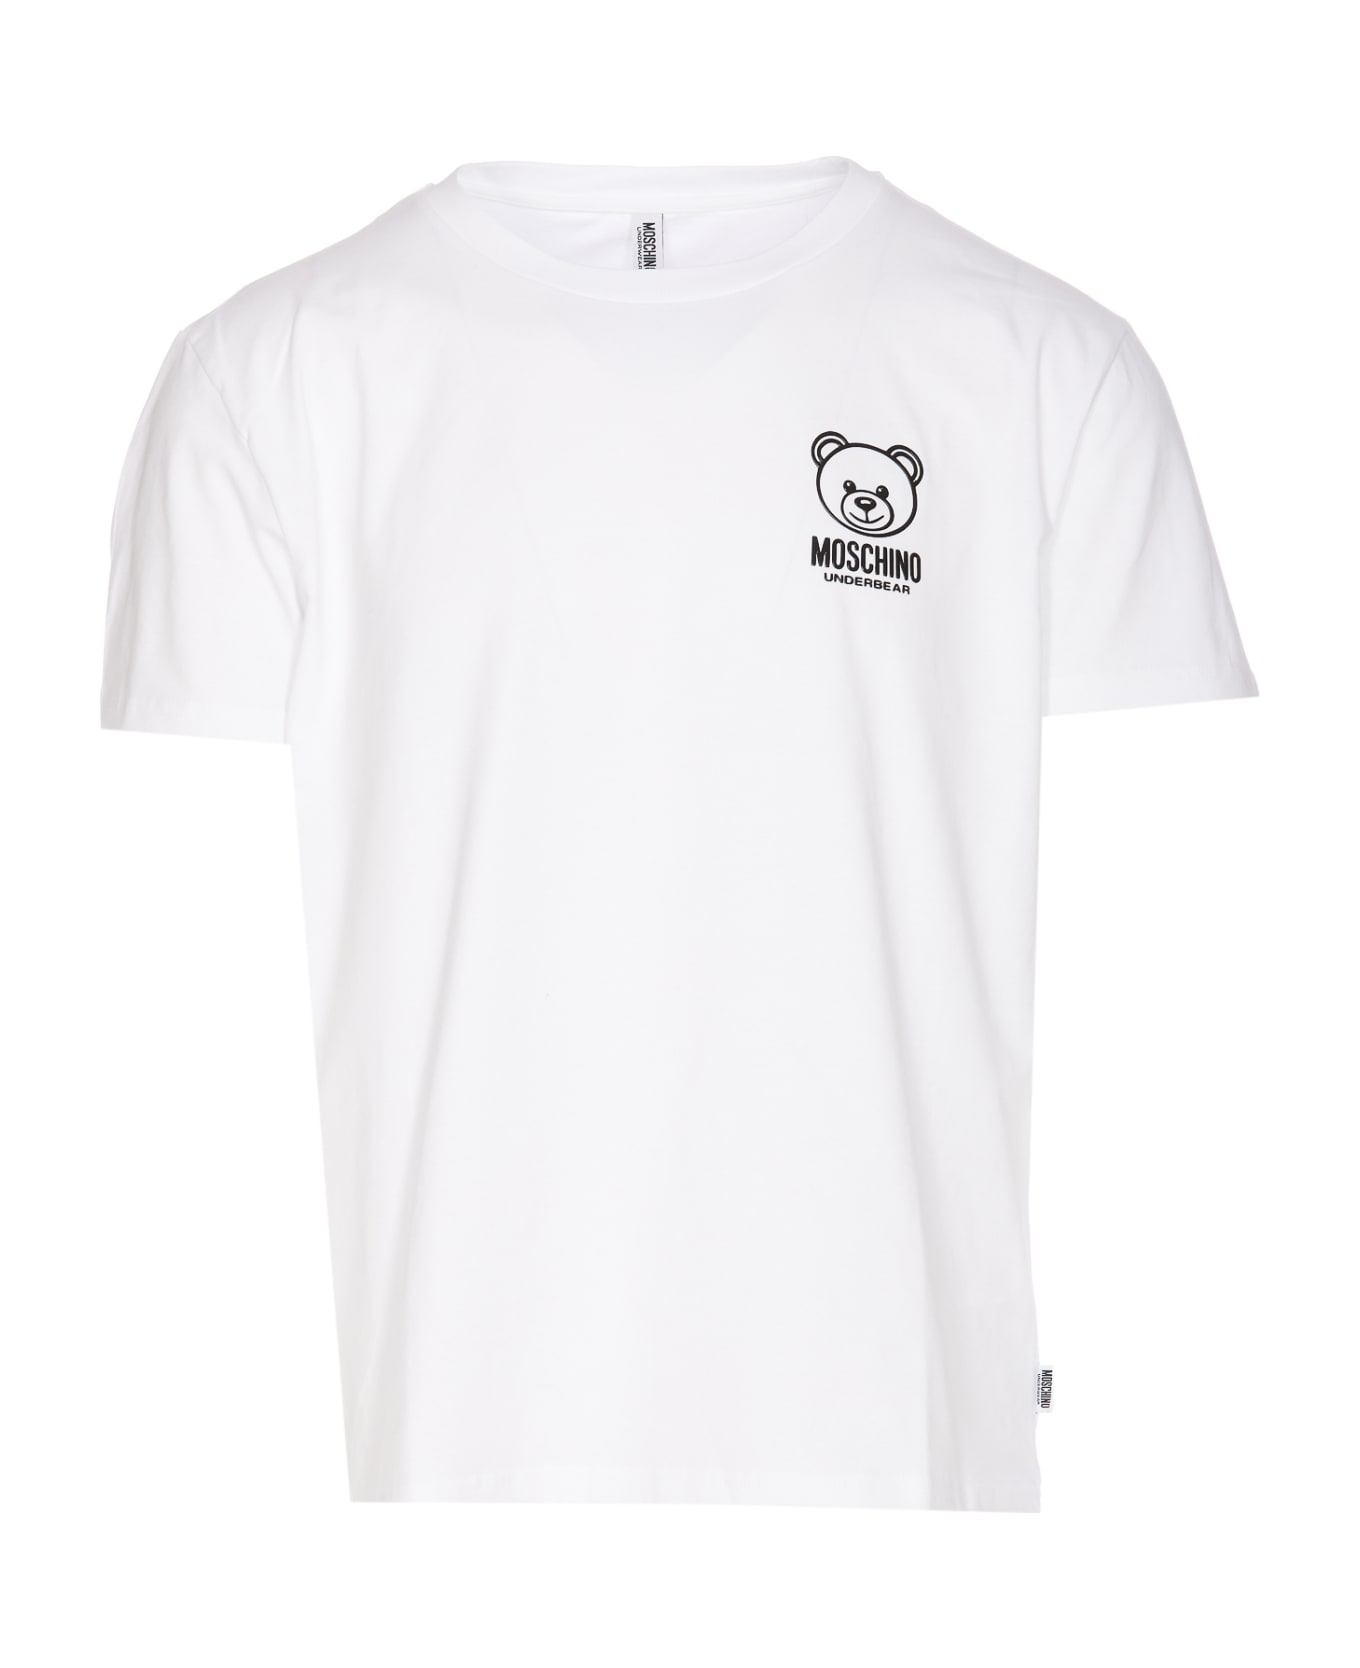 Moschino Underbear T-shirt - White シャツ